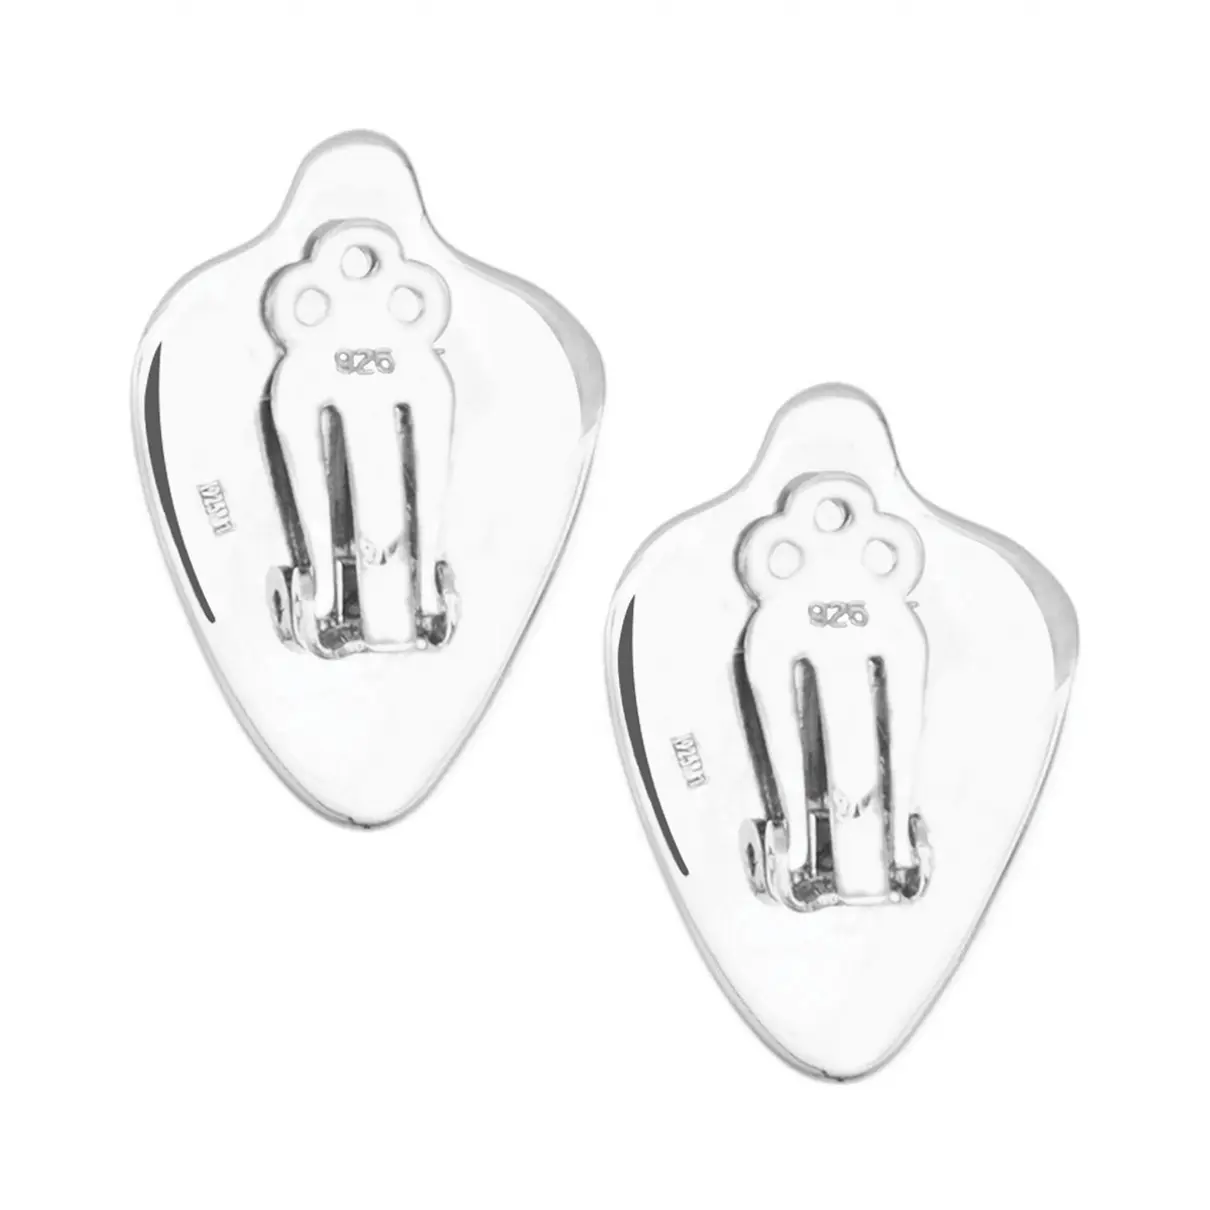 Loewe Silver earrings for sale